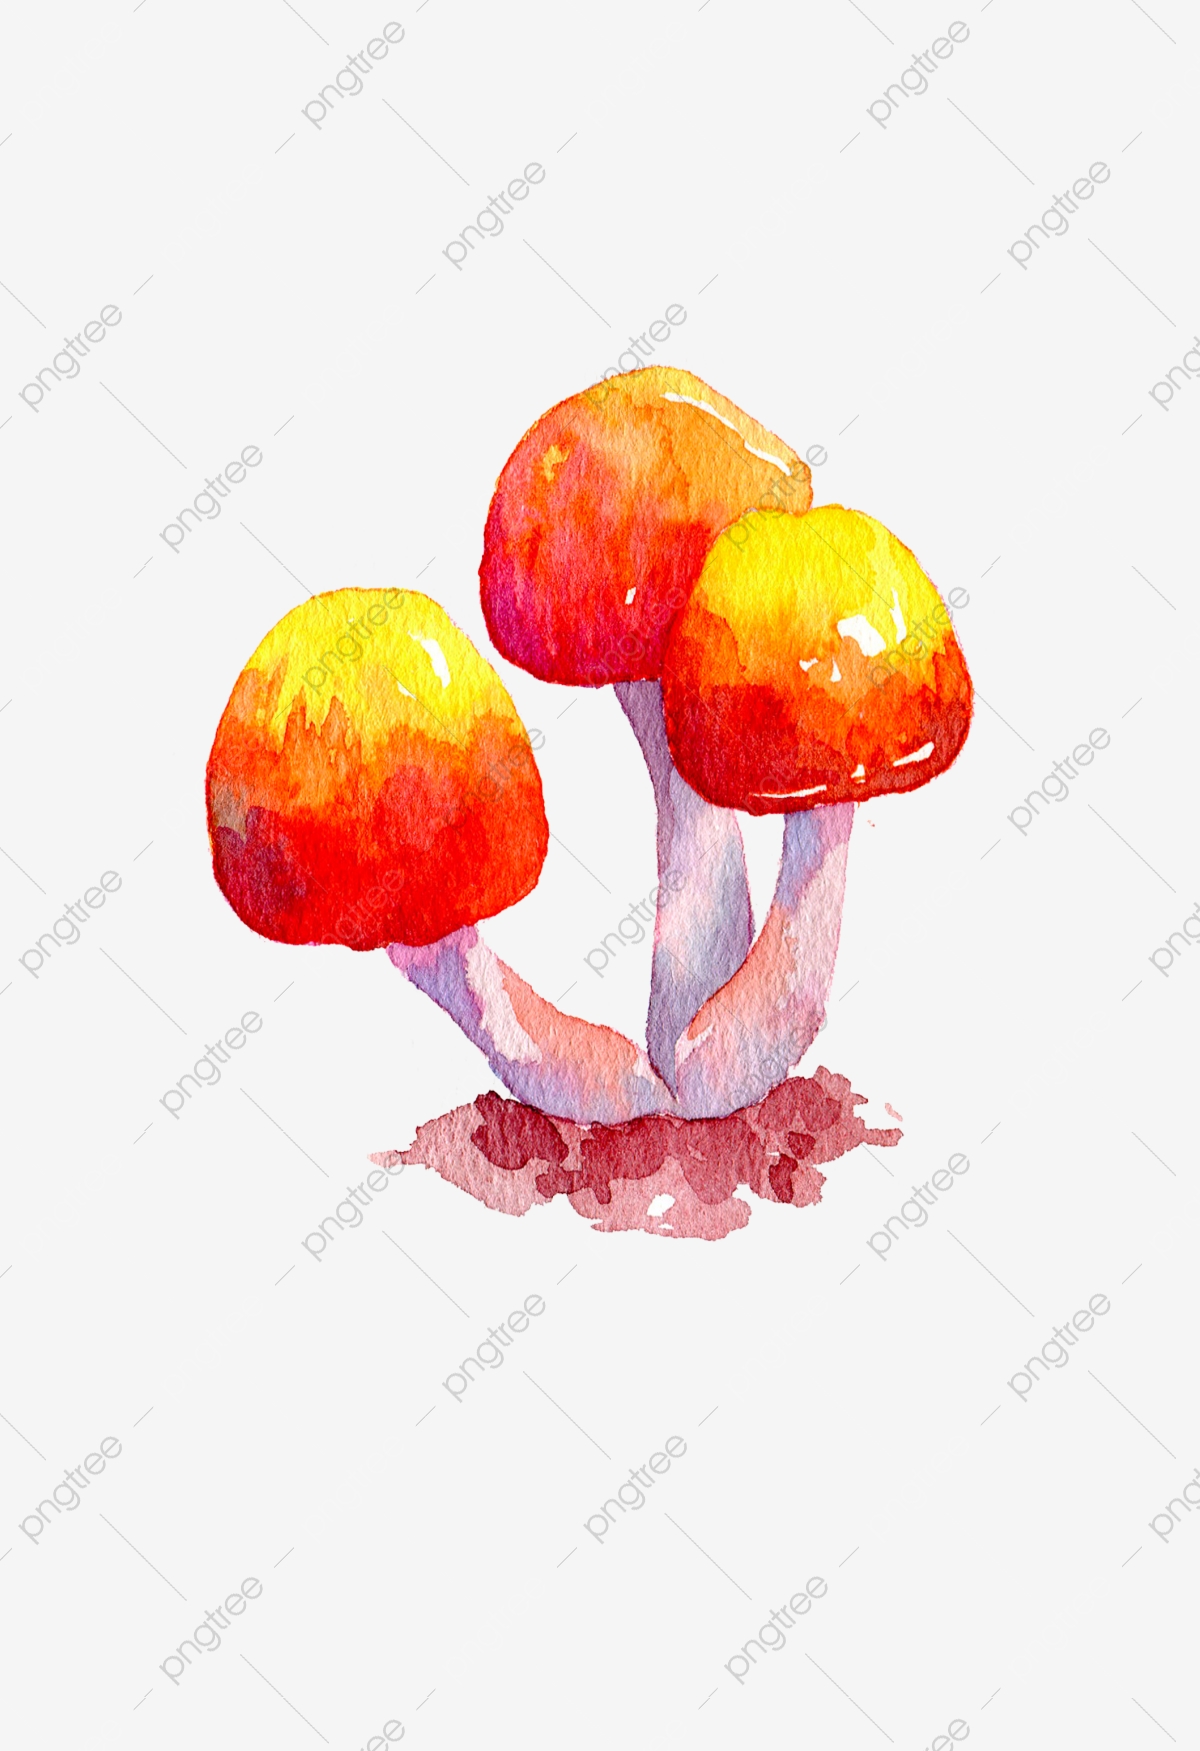 mushrooms clipart mushroom tree